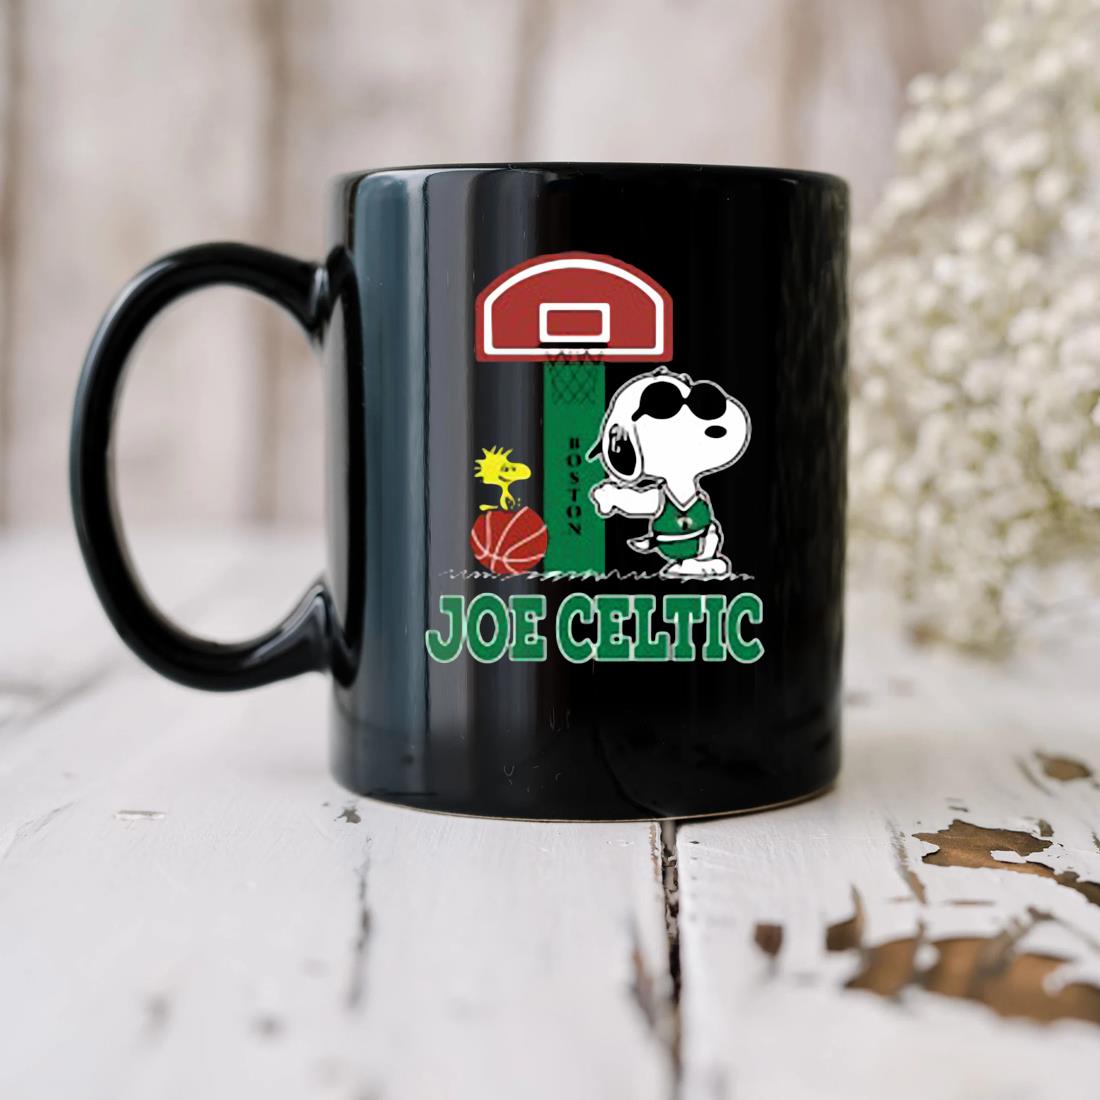 Snoopy Joe Celtic Mug